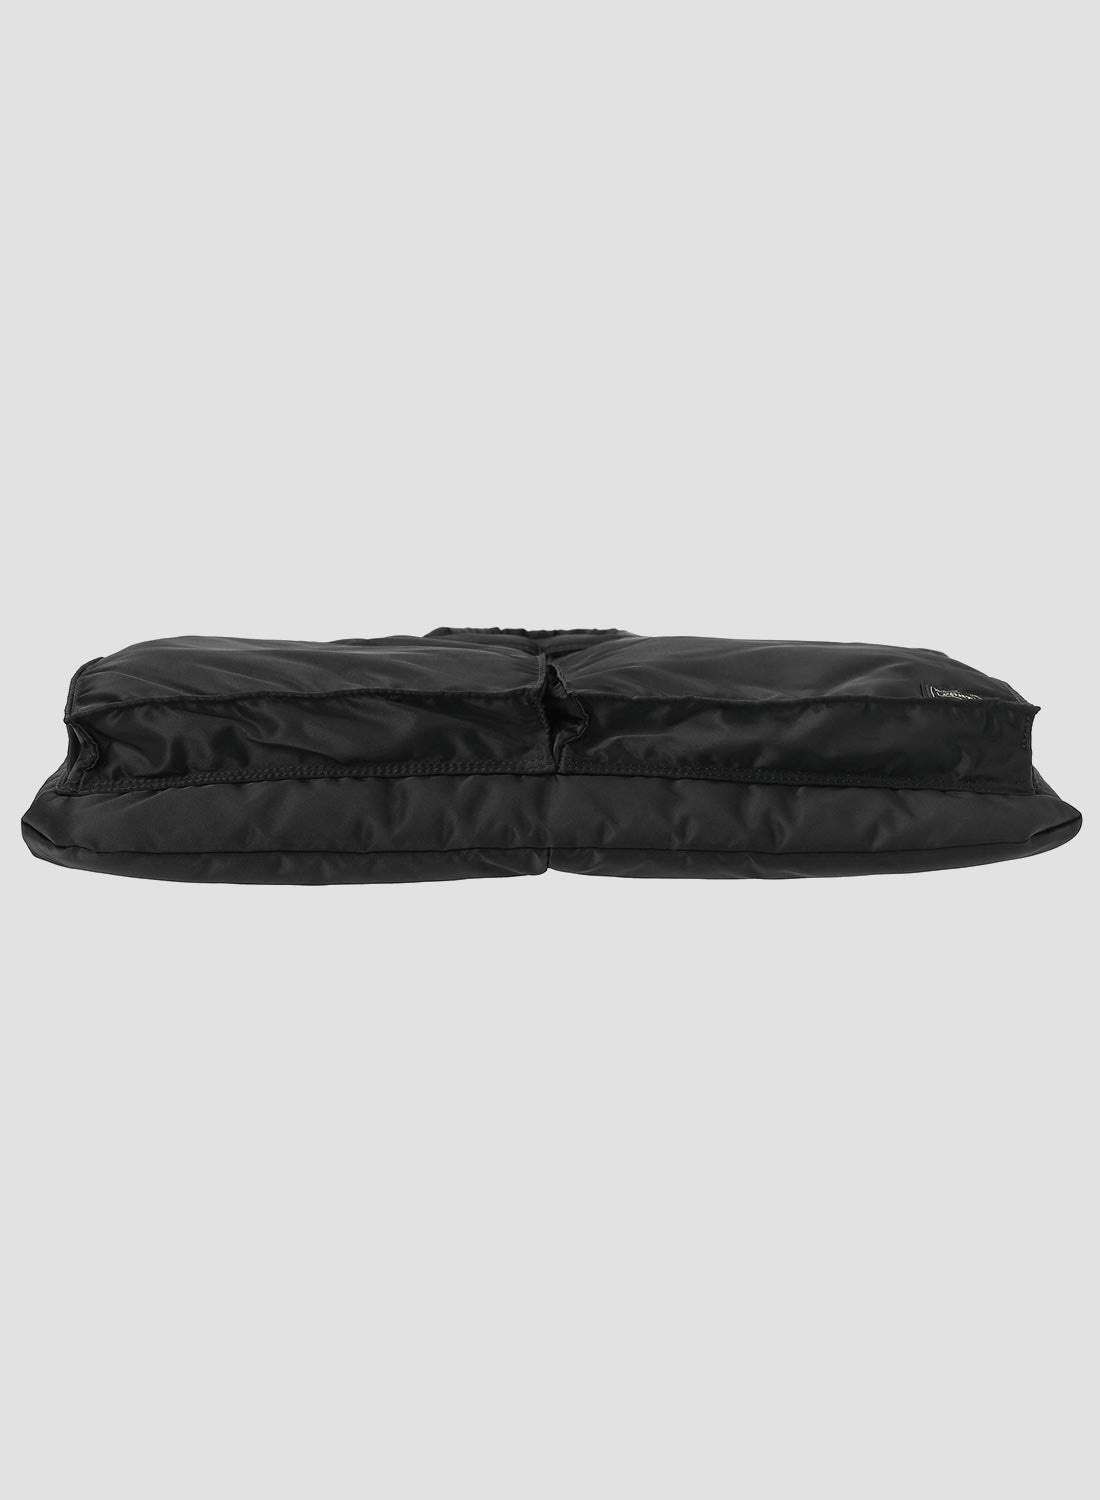 Porter-Yoshida & Co Tanker Short Helmet Bag Large in Black - 6